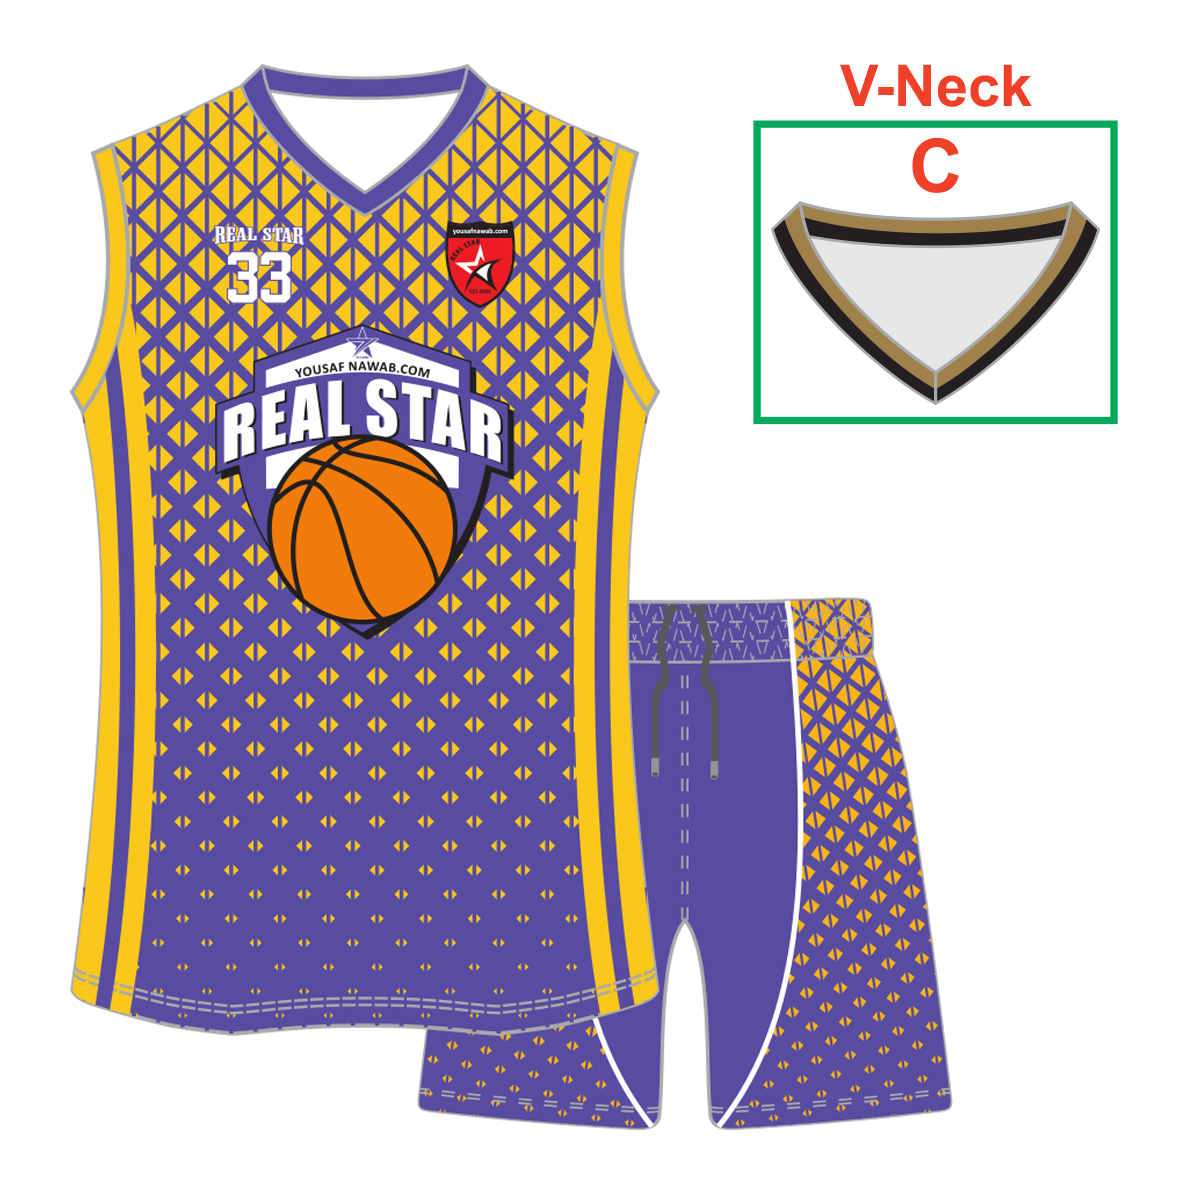 V-Neck Basketball Kit